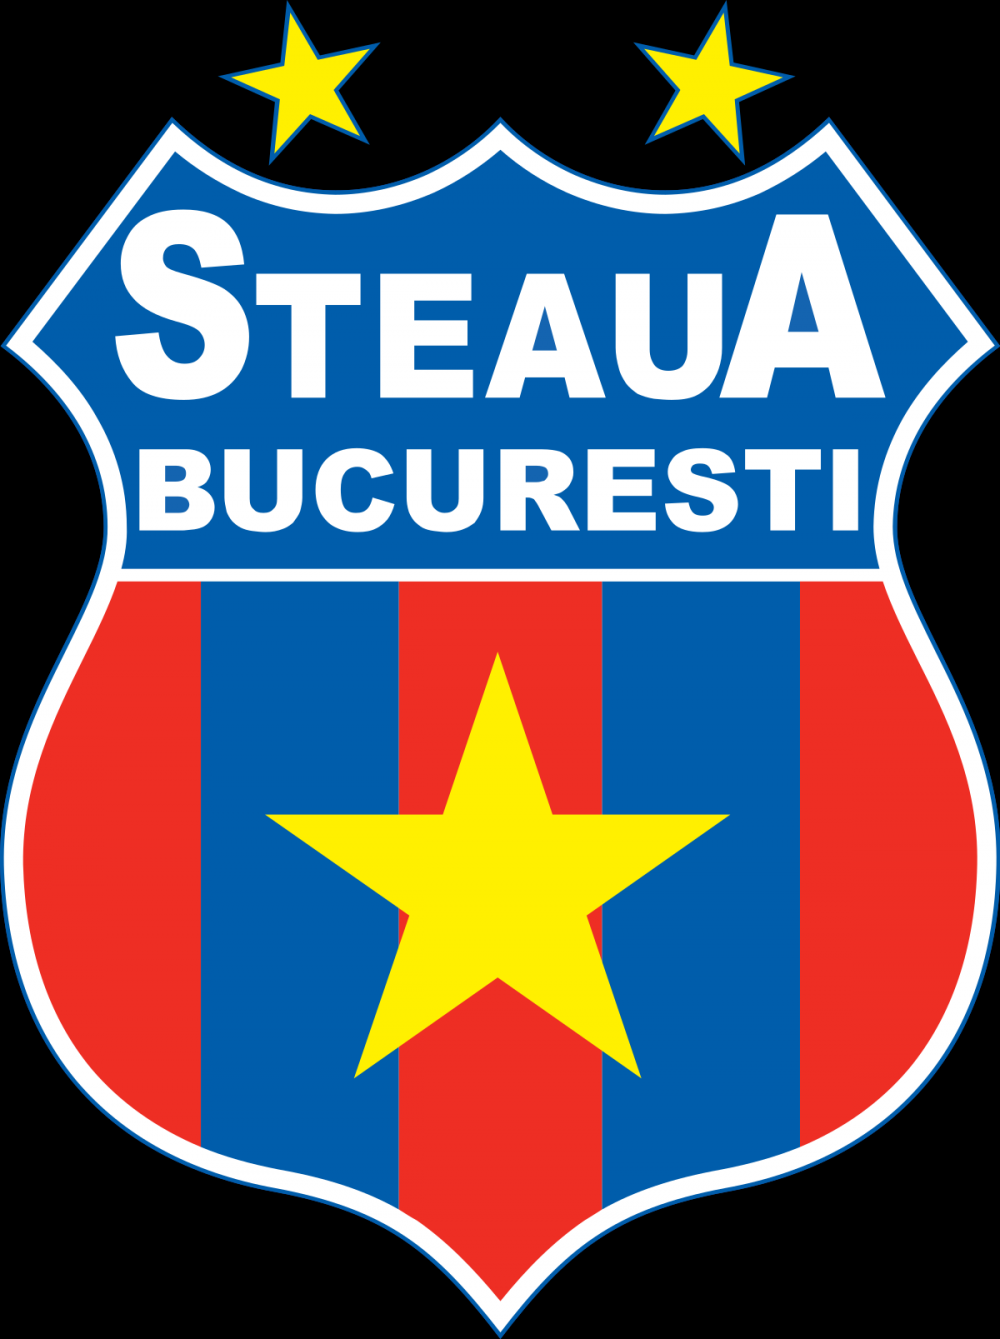 Copy-paste! Echipele românești care au copiat emblemele unor cluburi celebre din străinătate_18